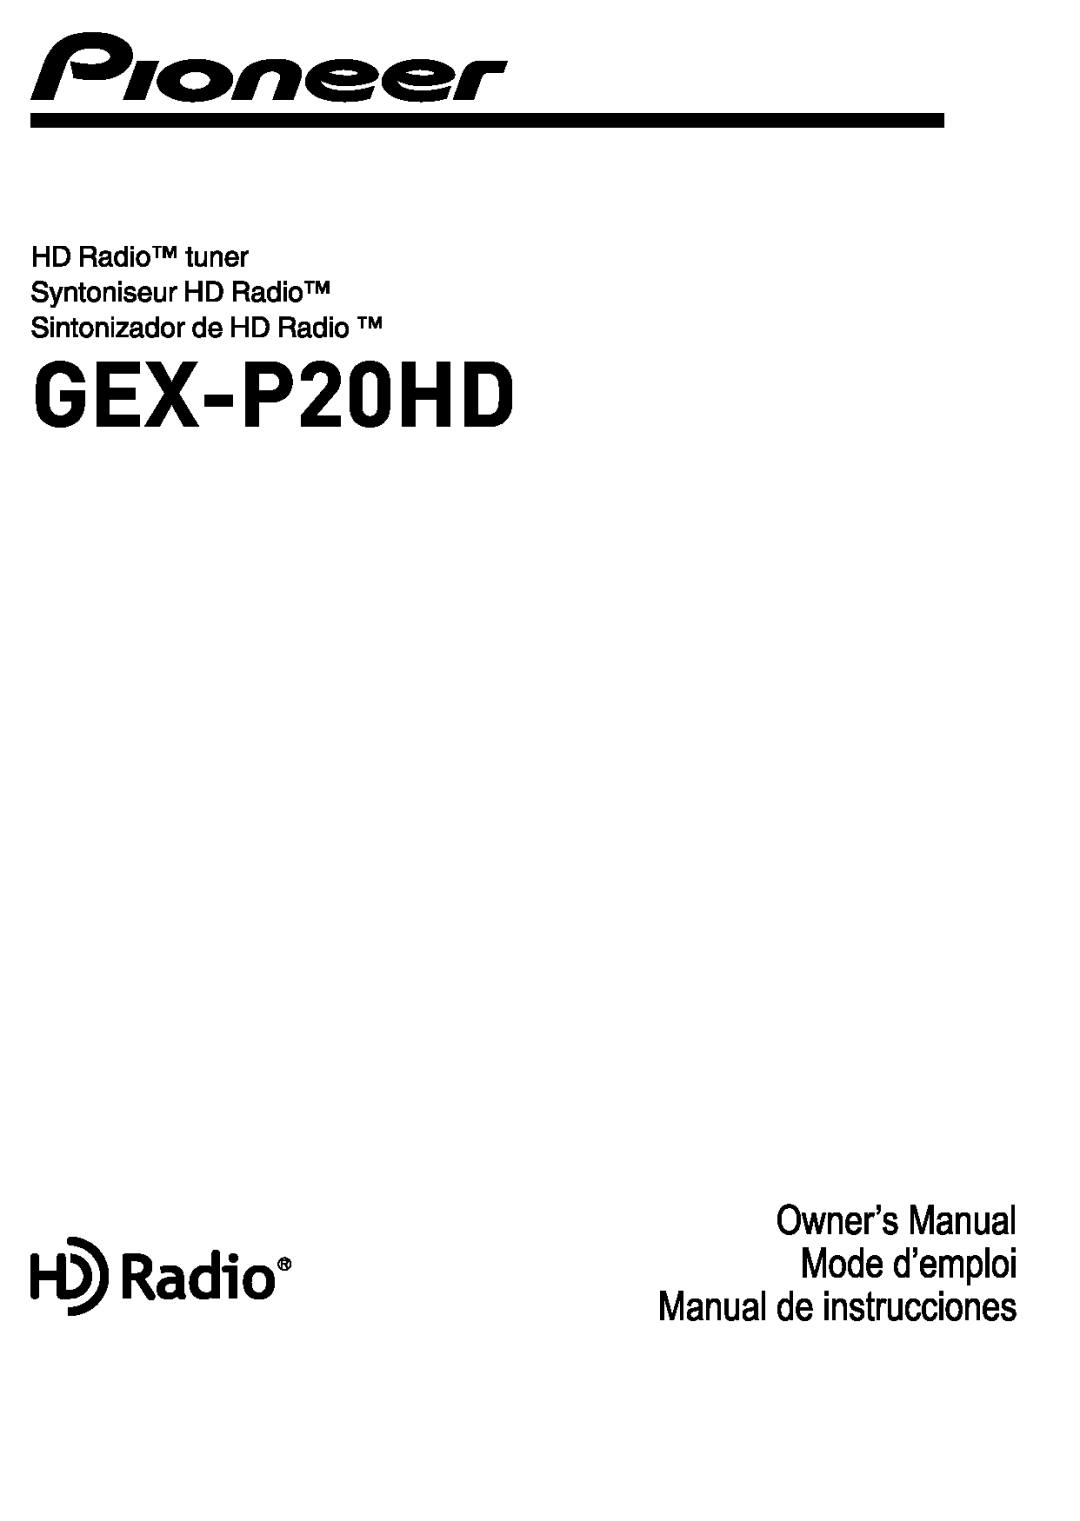 Pioneer GEX-P20HD manual 